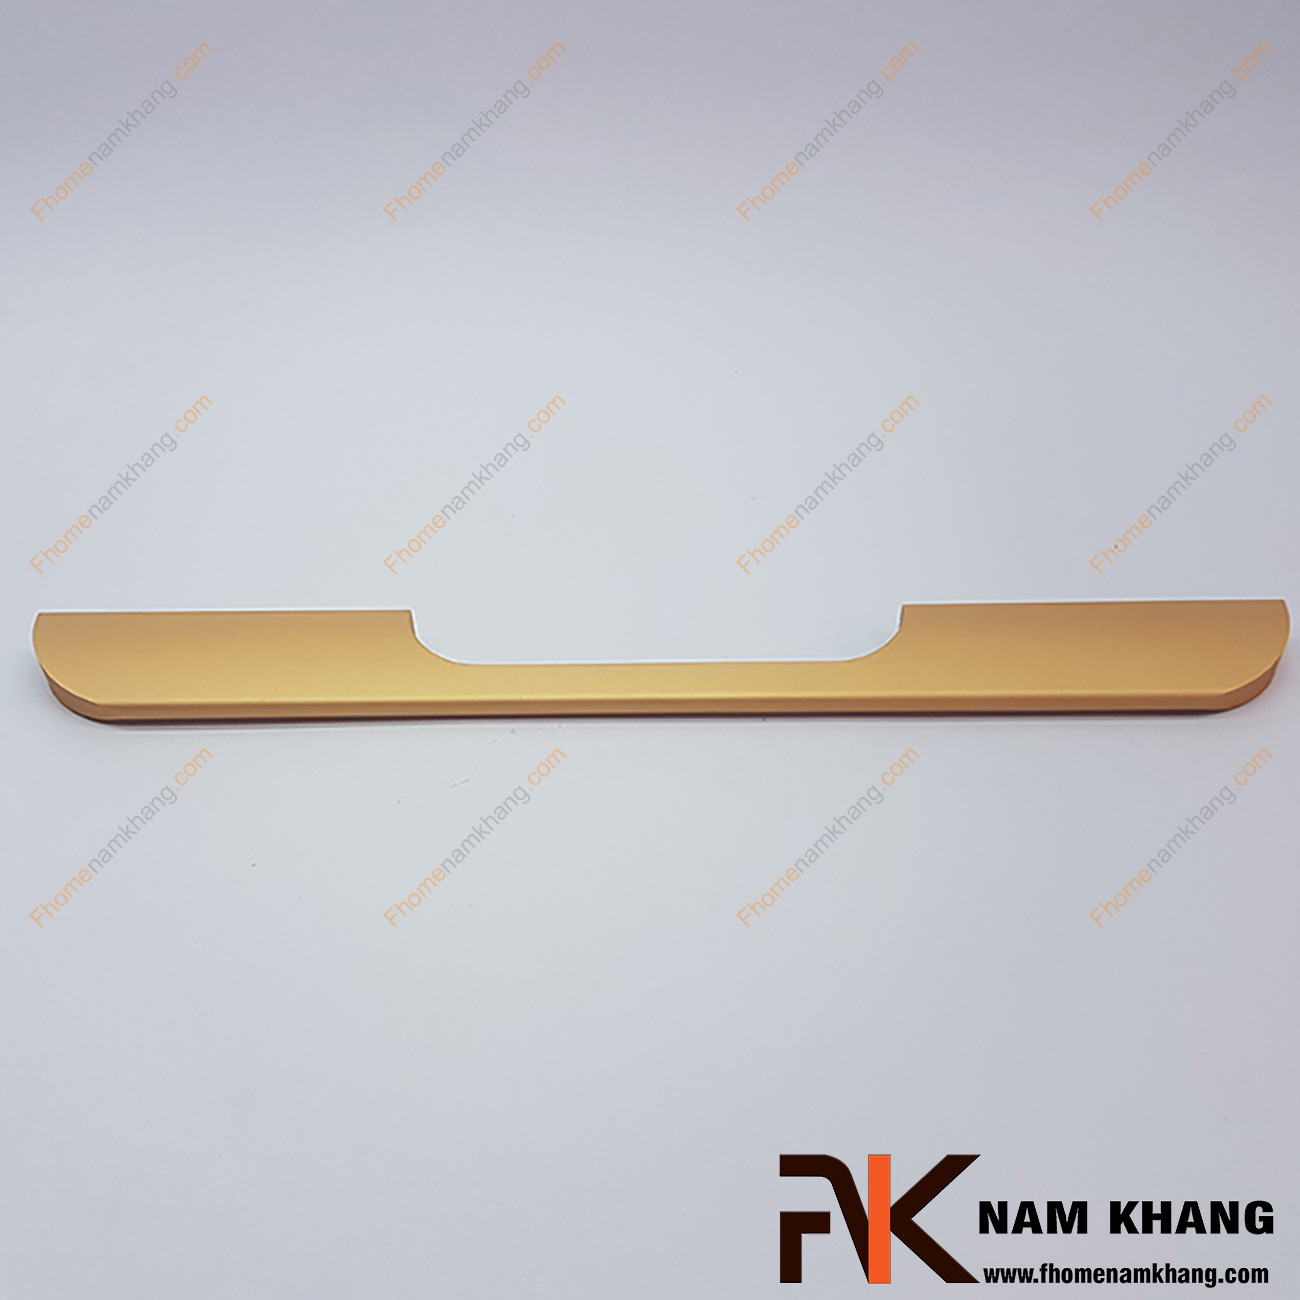 Tay cầm cửa màu vàng mờ NK217-192VM được sản xuất từ hợp kim chất lượng cao và được gia công trên dây chuyền hiện đại cho ra độ bóng mượt và đường nét bo cạnh mềm mại.